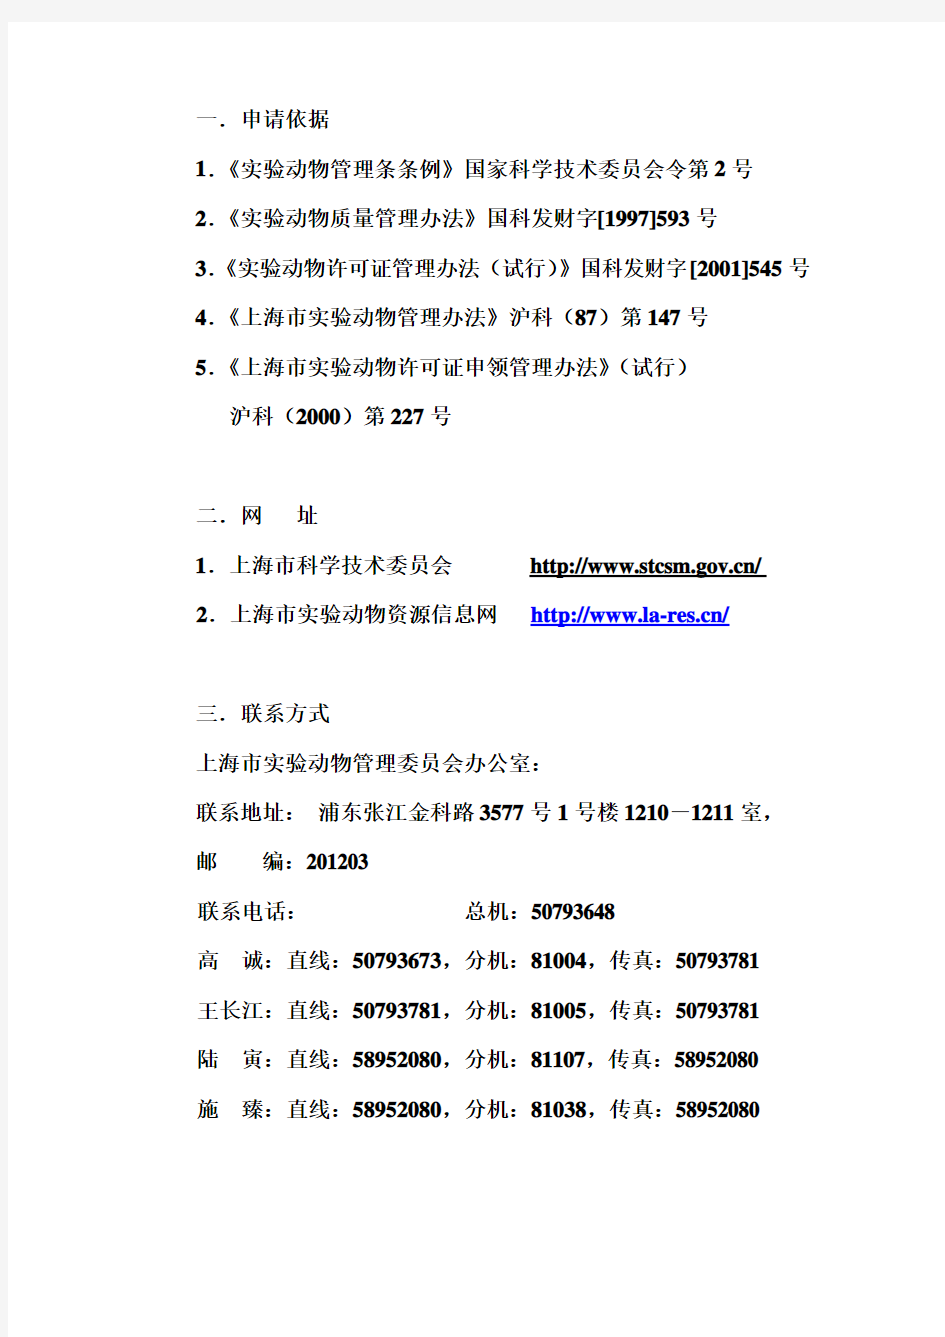 上海市实验动物许可证申领、审批程序图